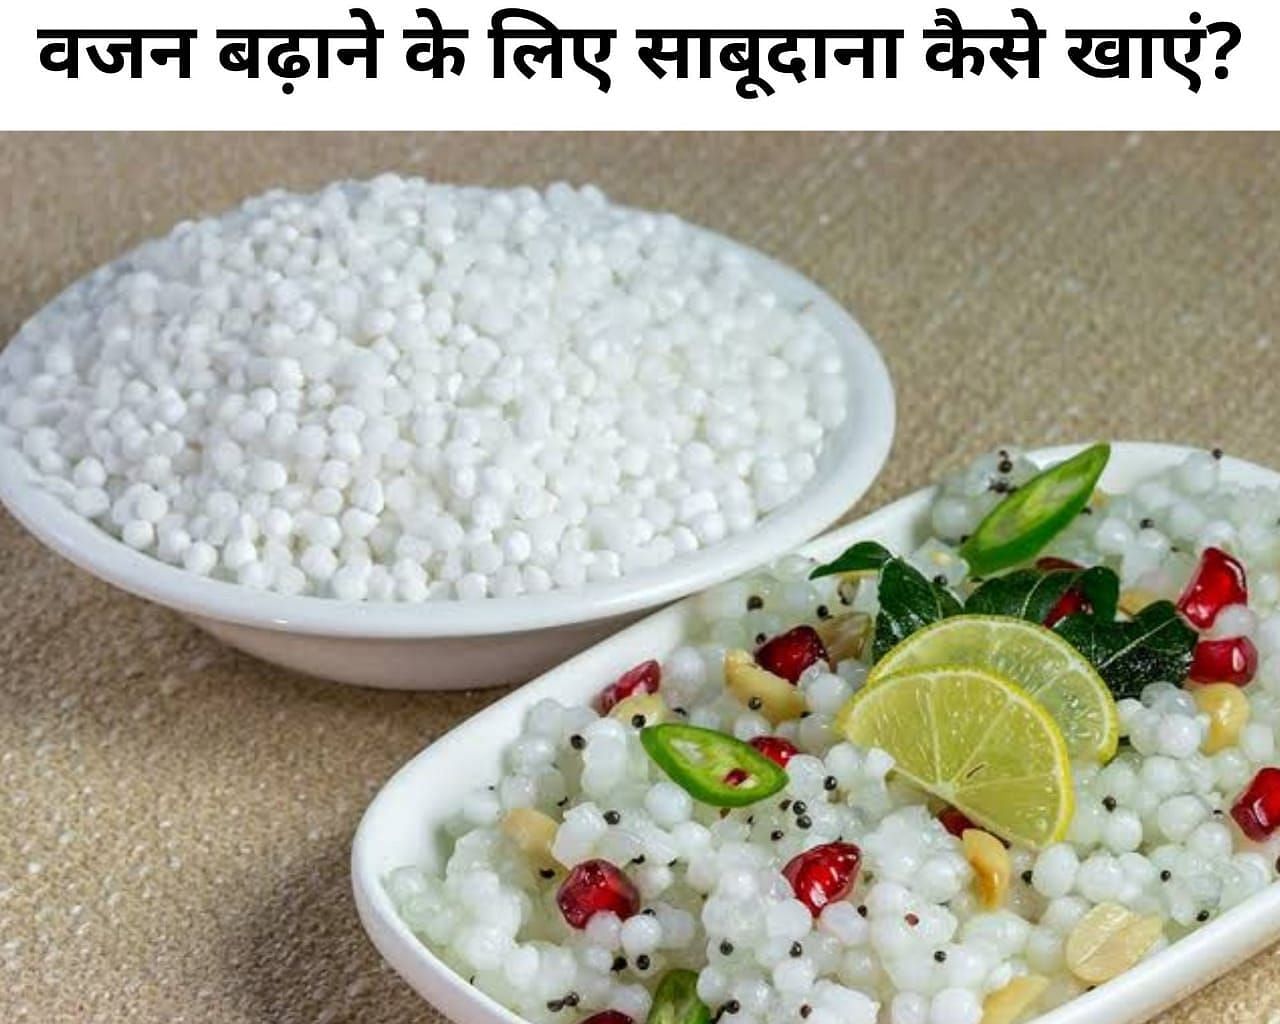 वजन बढ़ाने के लिए साबूदाना कैसे खाएं? (फोटो - sportskeeda hindi)